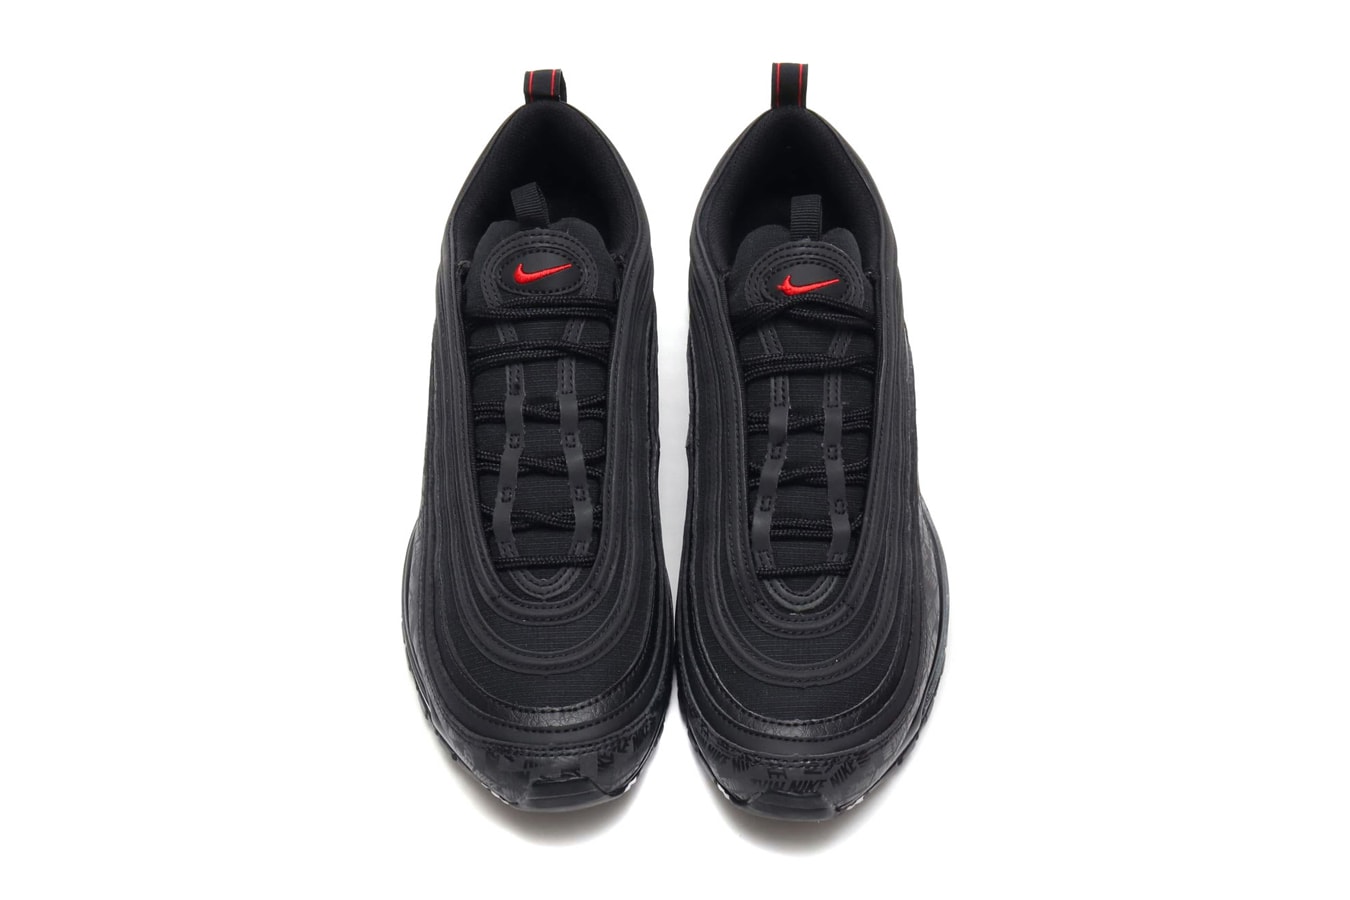 Nike Air Max 97 black university red release info sneakers footwear branding